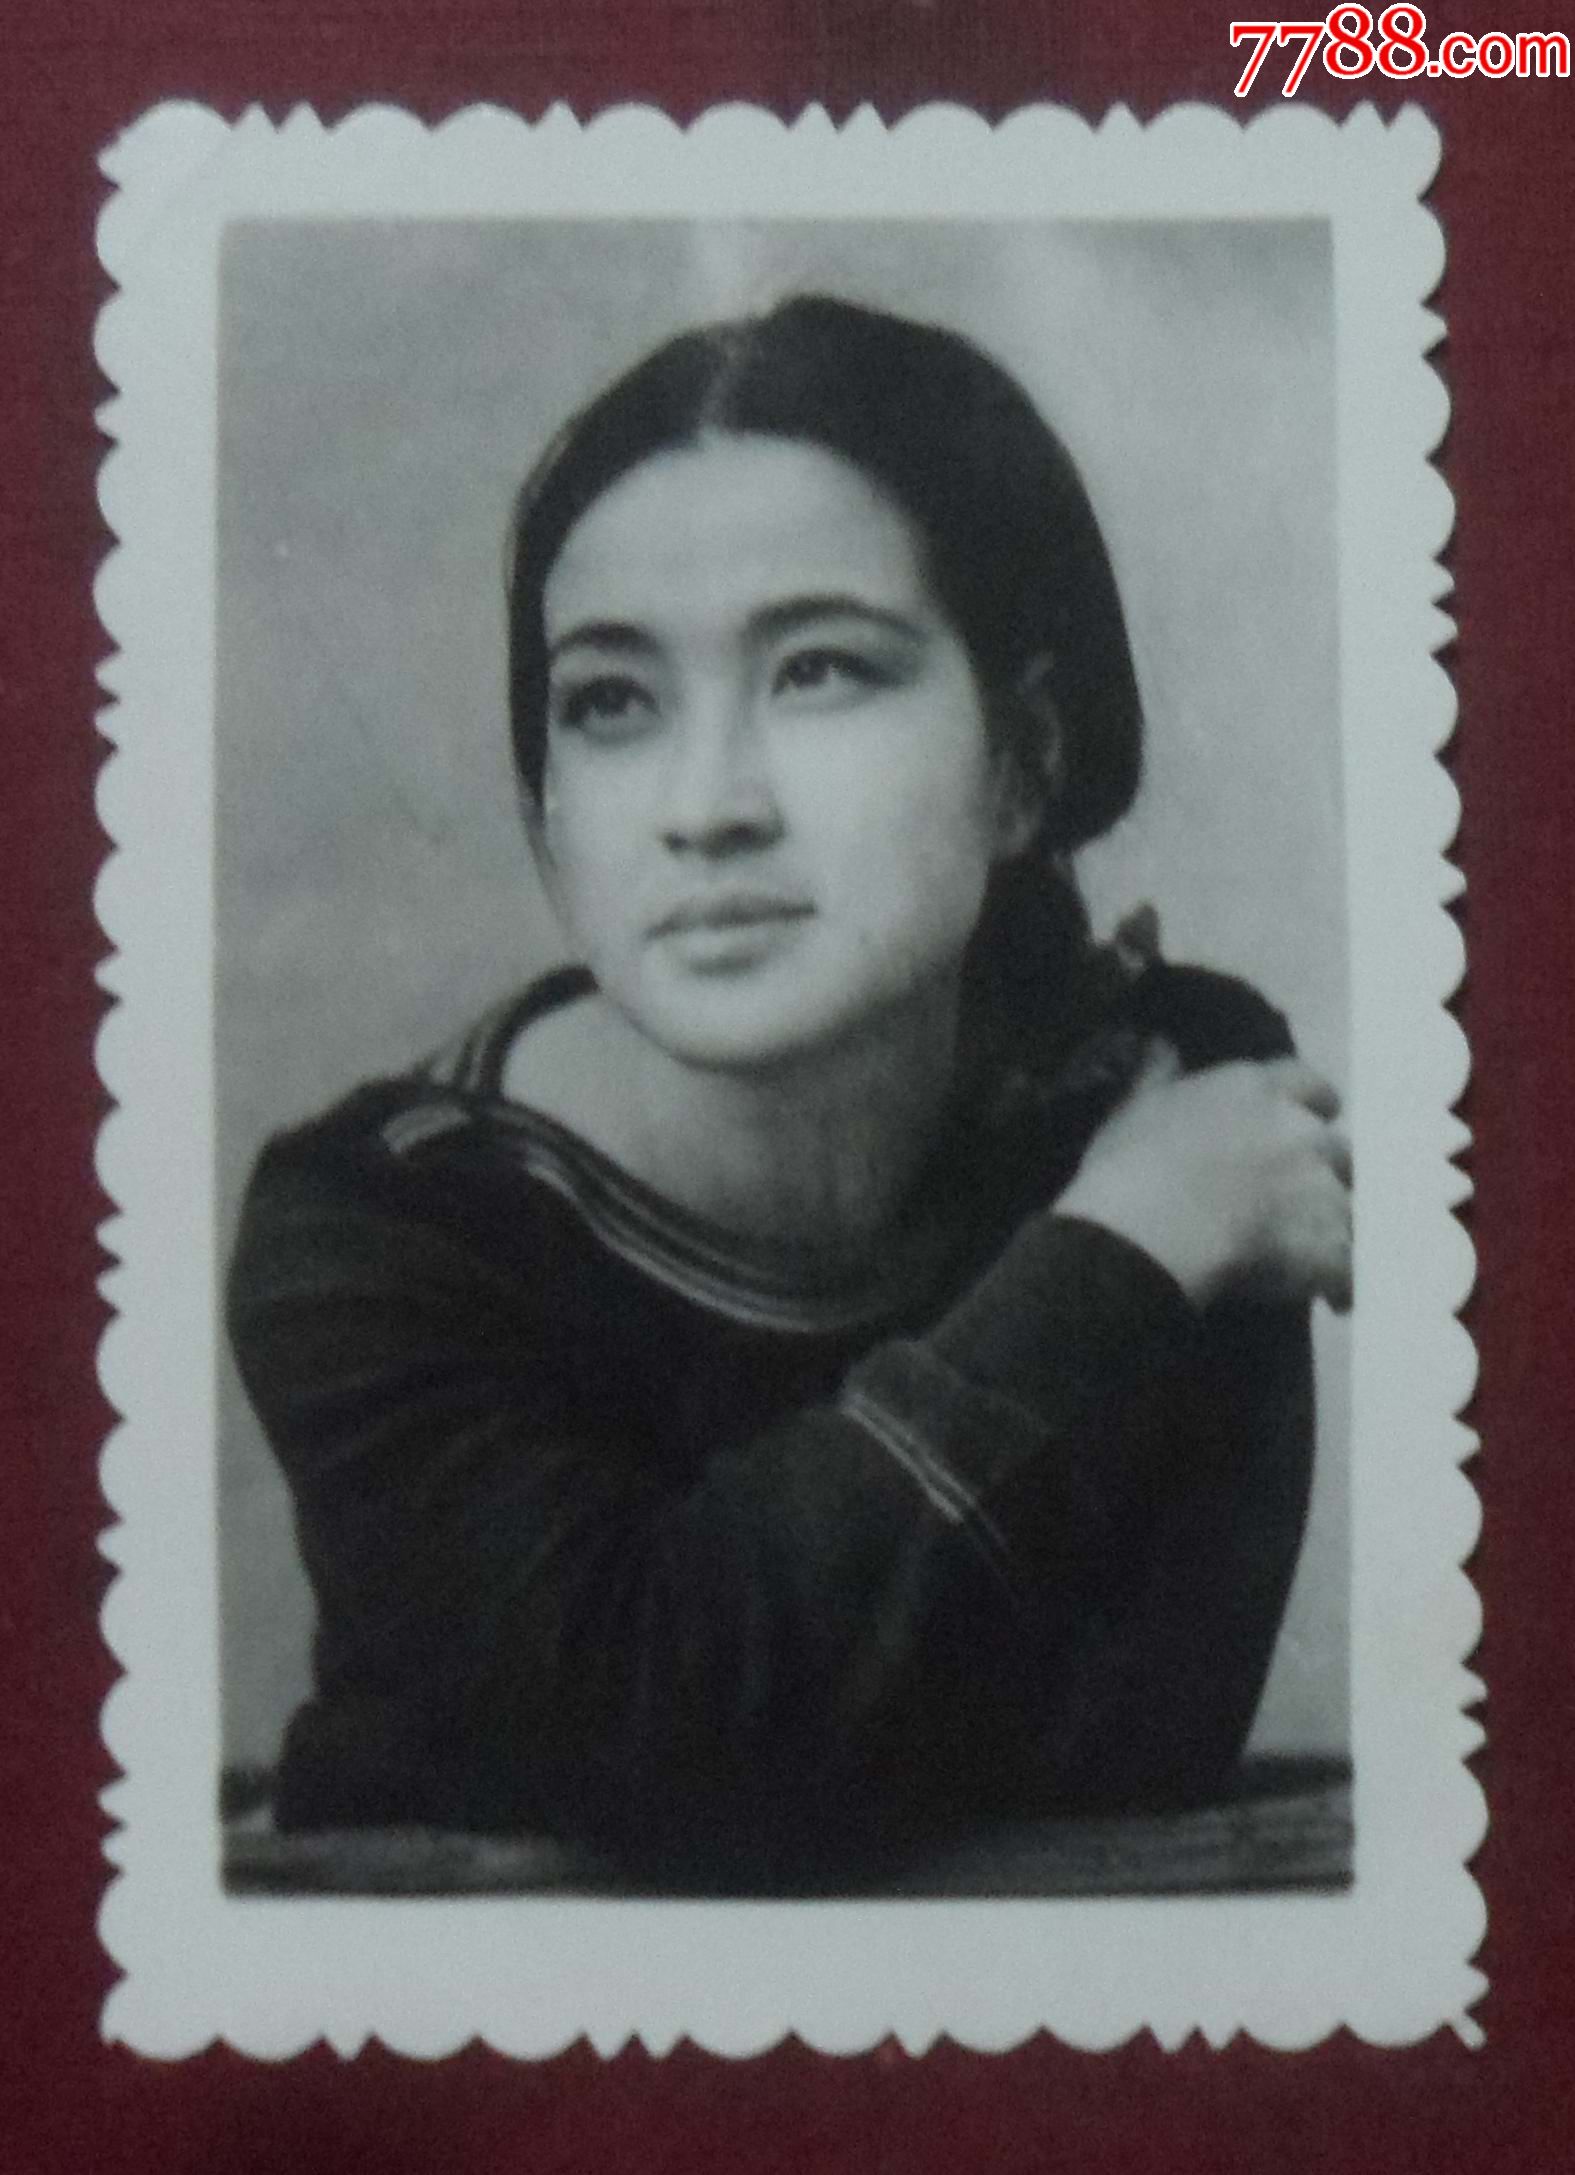 刘晓庆年轻黑白照片图片